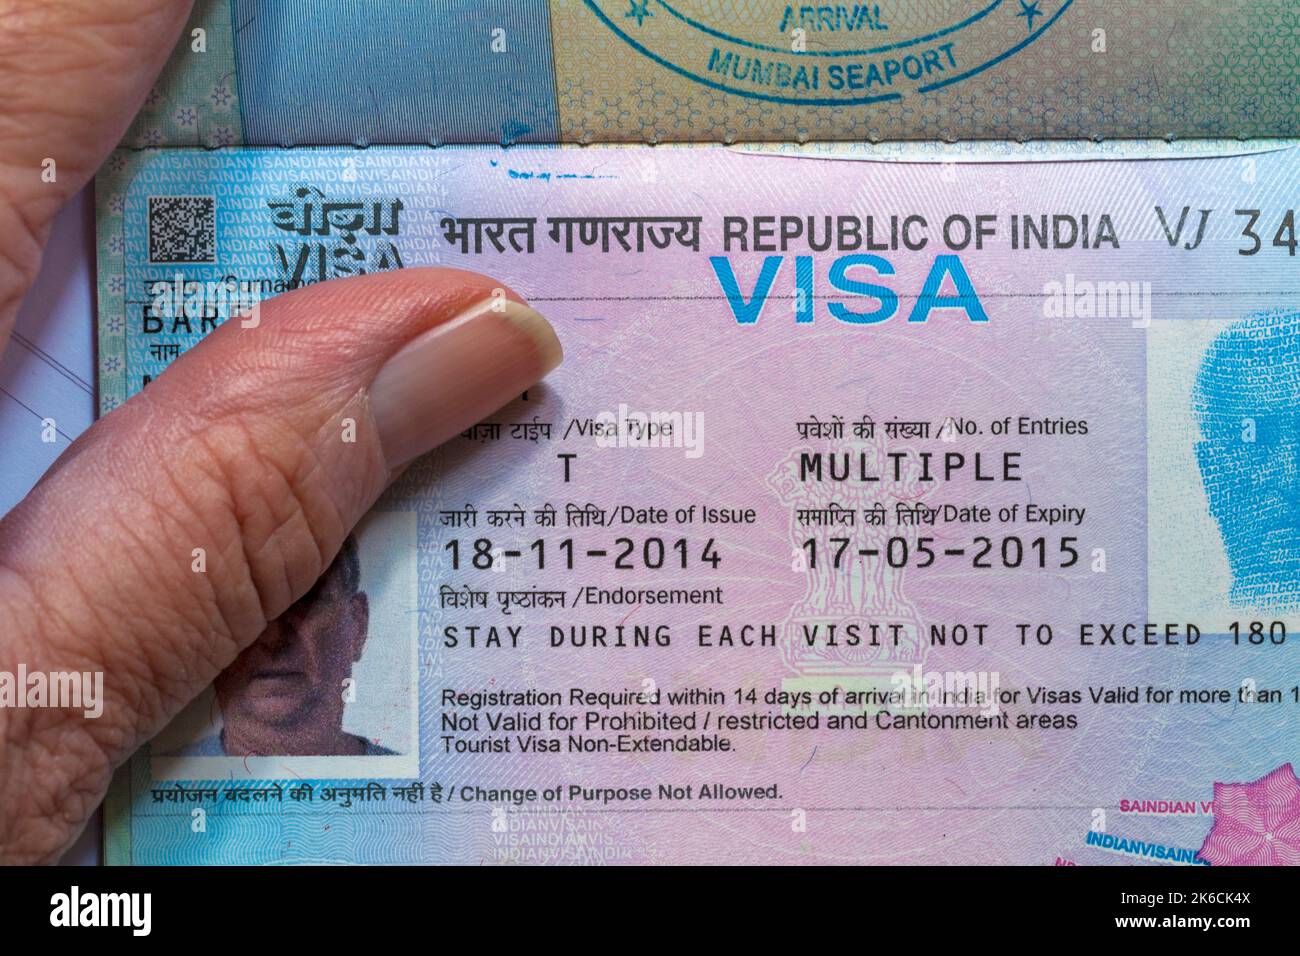 Tourist visa india Banque de photographies et d'images à haute résolution -  Alamy